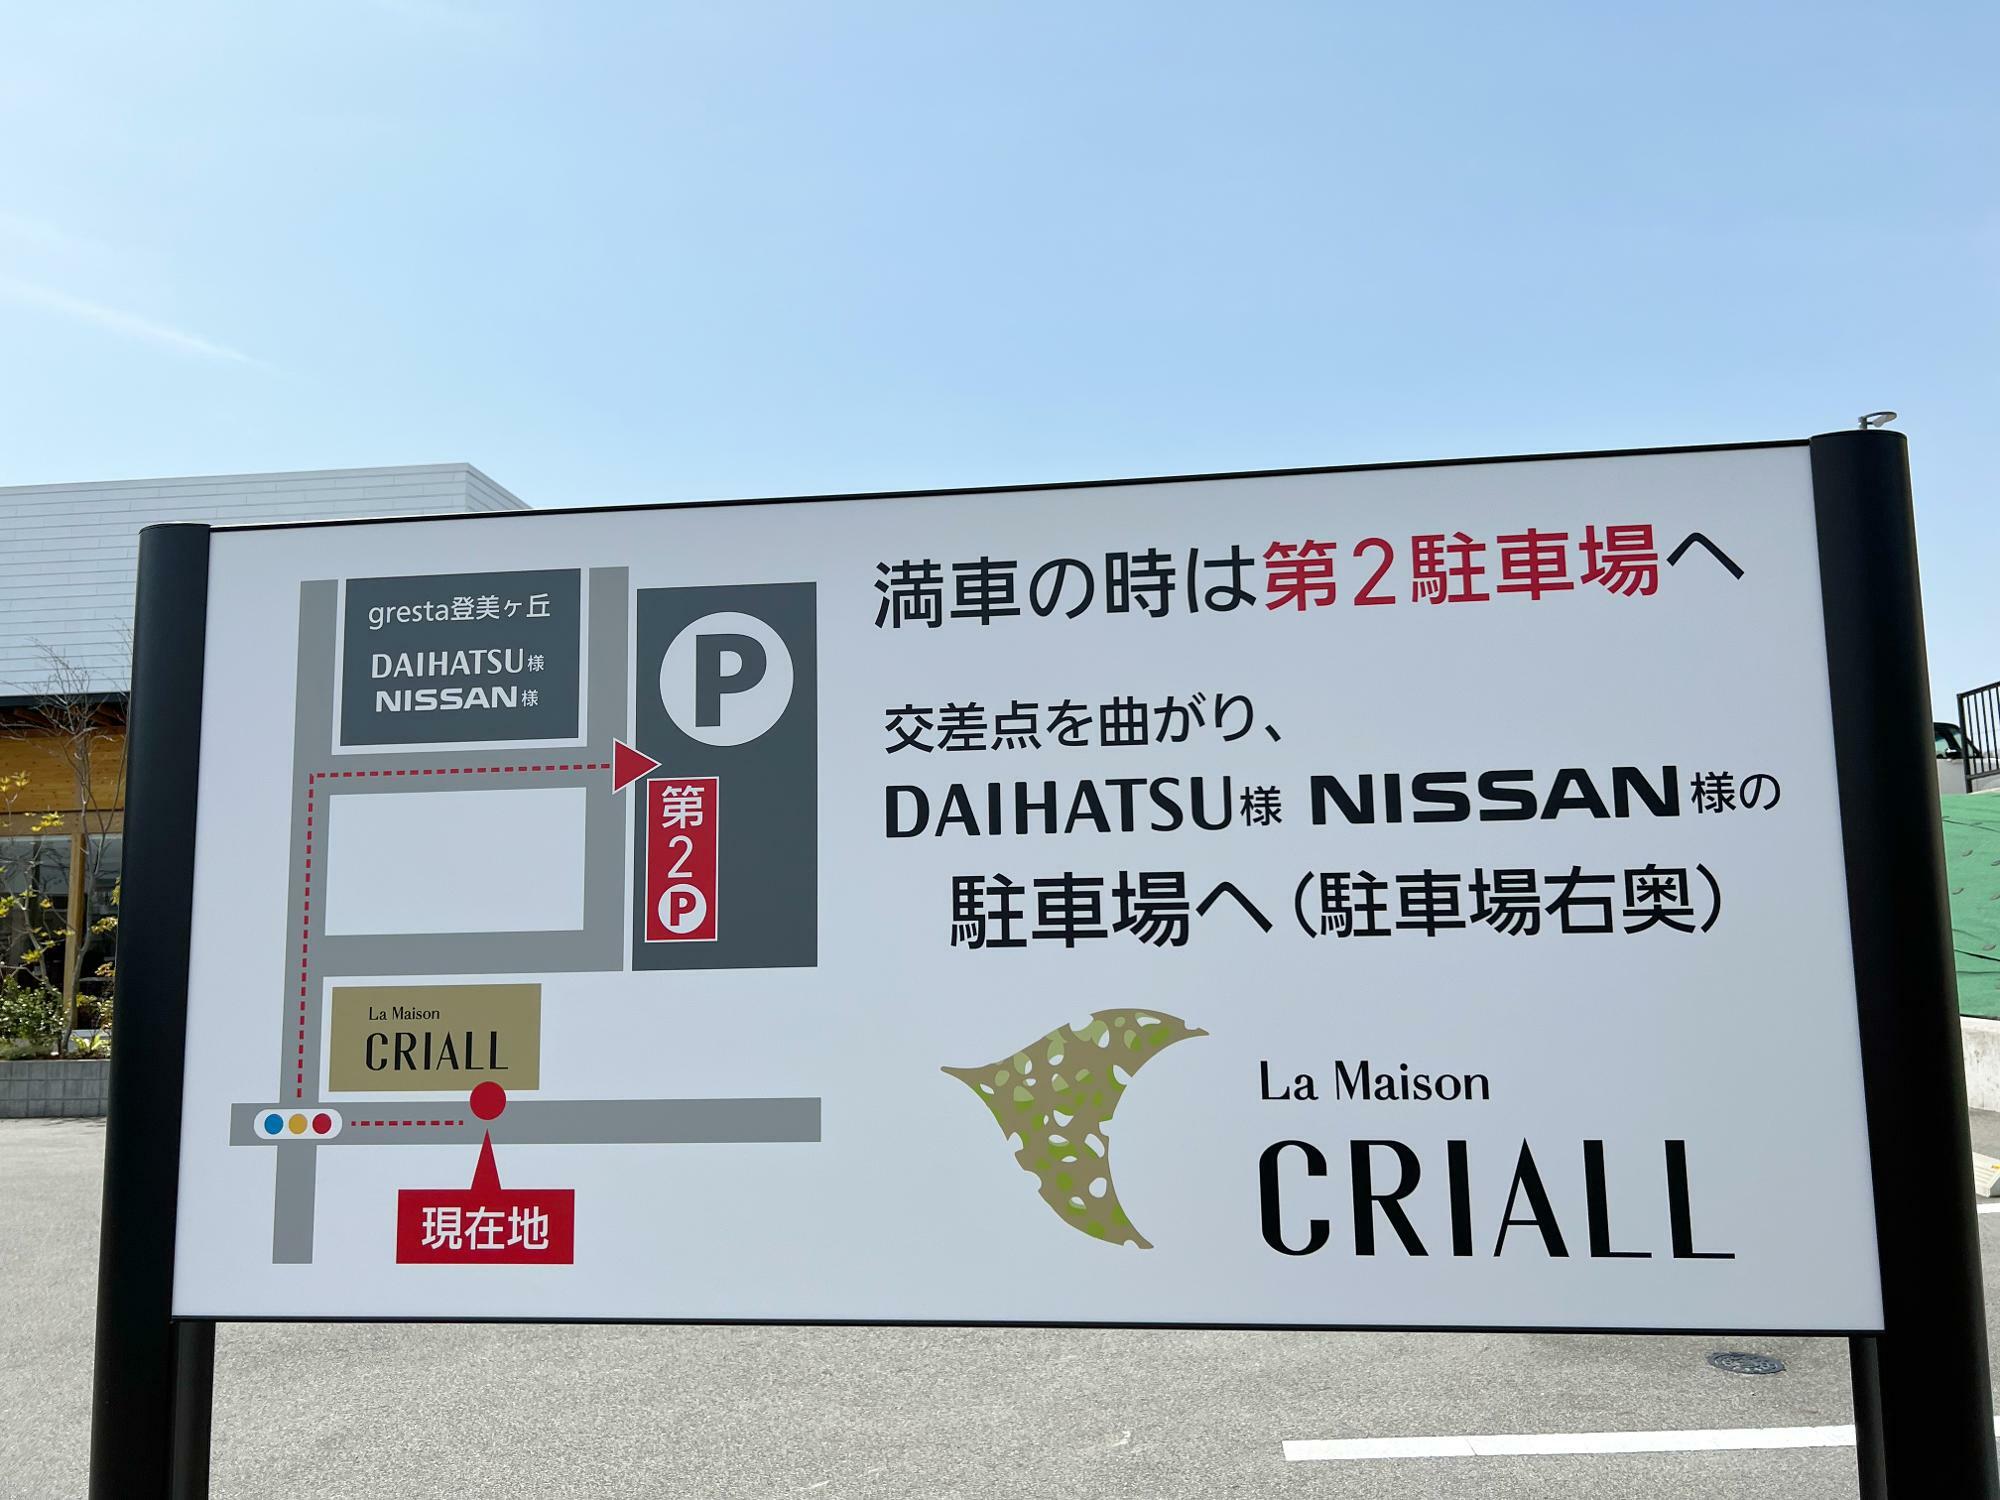 満車のときは、お隣のDAIHATSU・NISSANの敷地内の第2駐車場へも停めることが出来るようです。